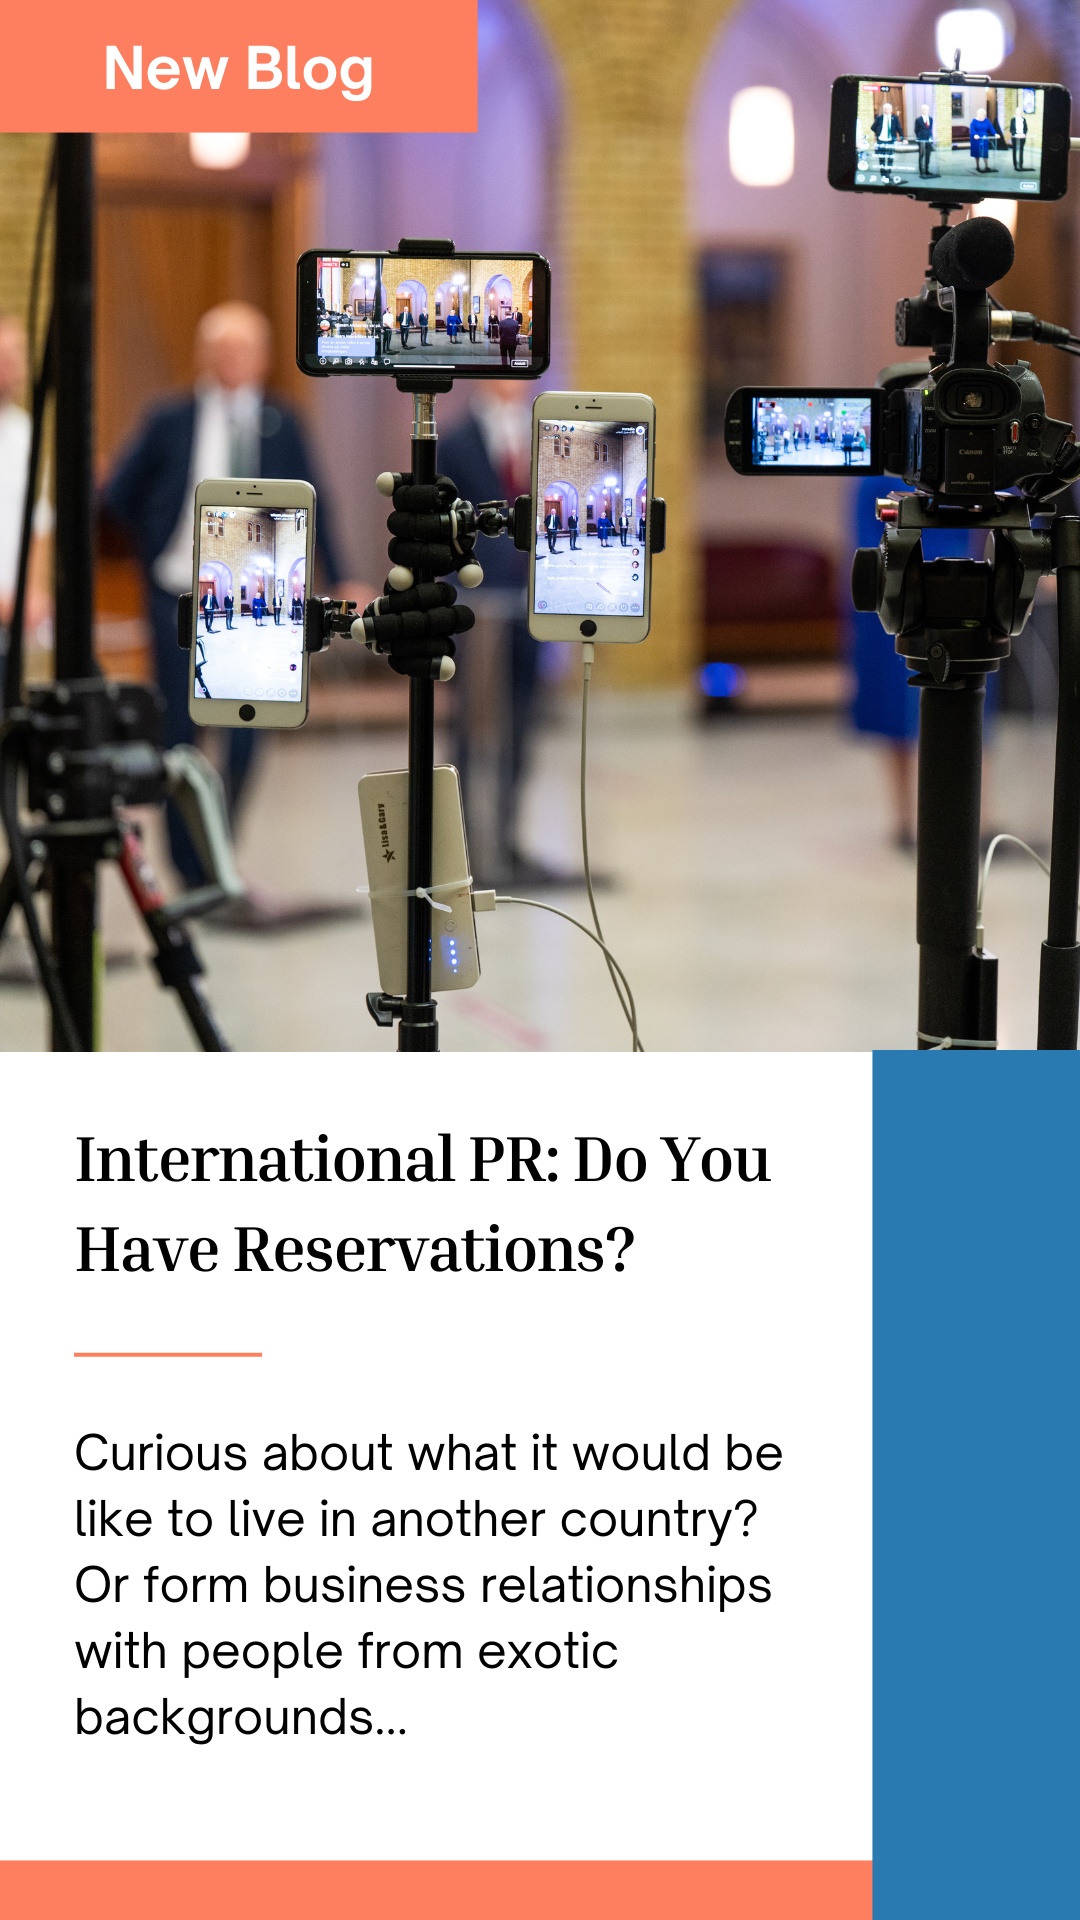 International PR: Do You Have Reservations?<br />
